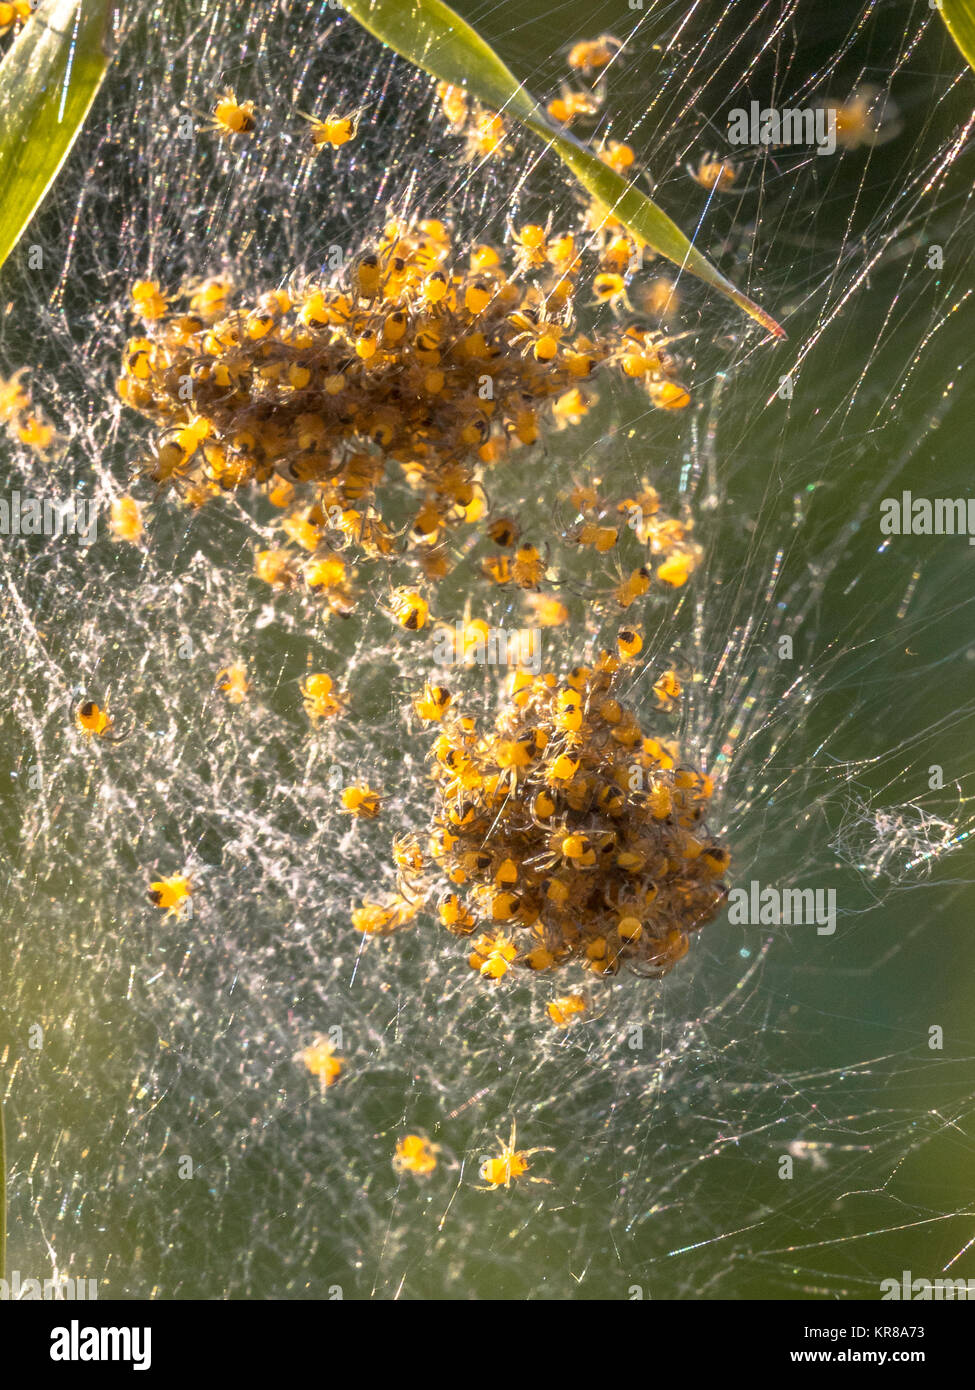 Nido di ragno con molte piccole spidersemerging da uova Foto Stock